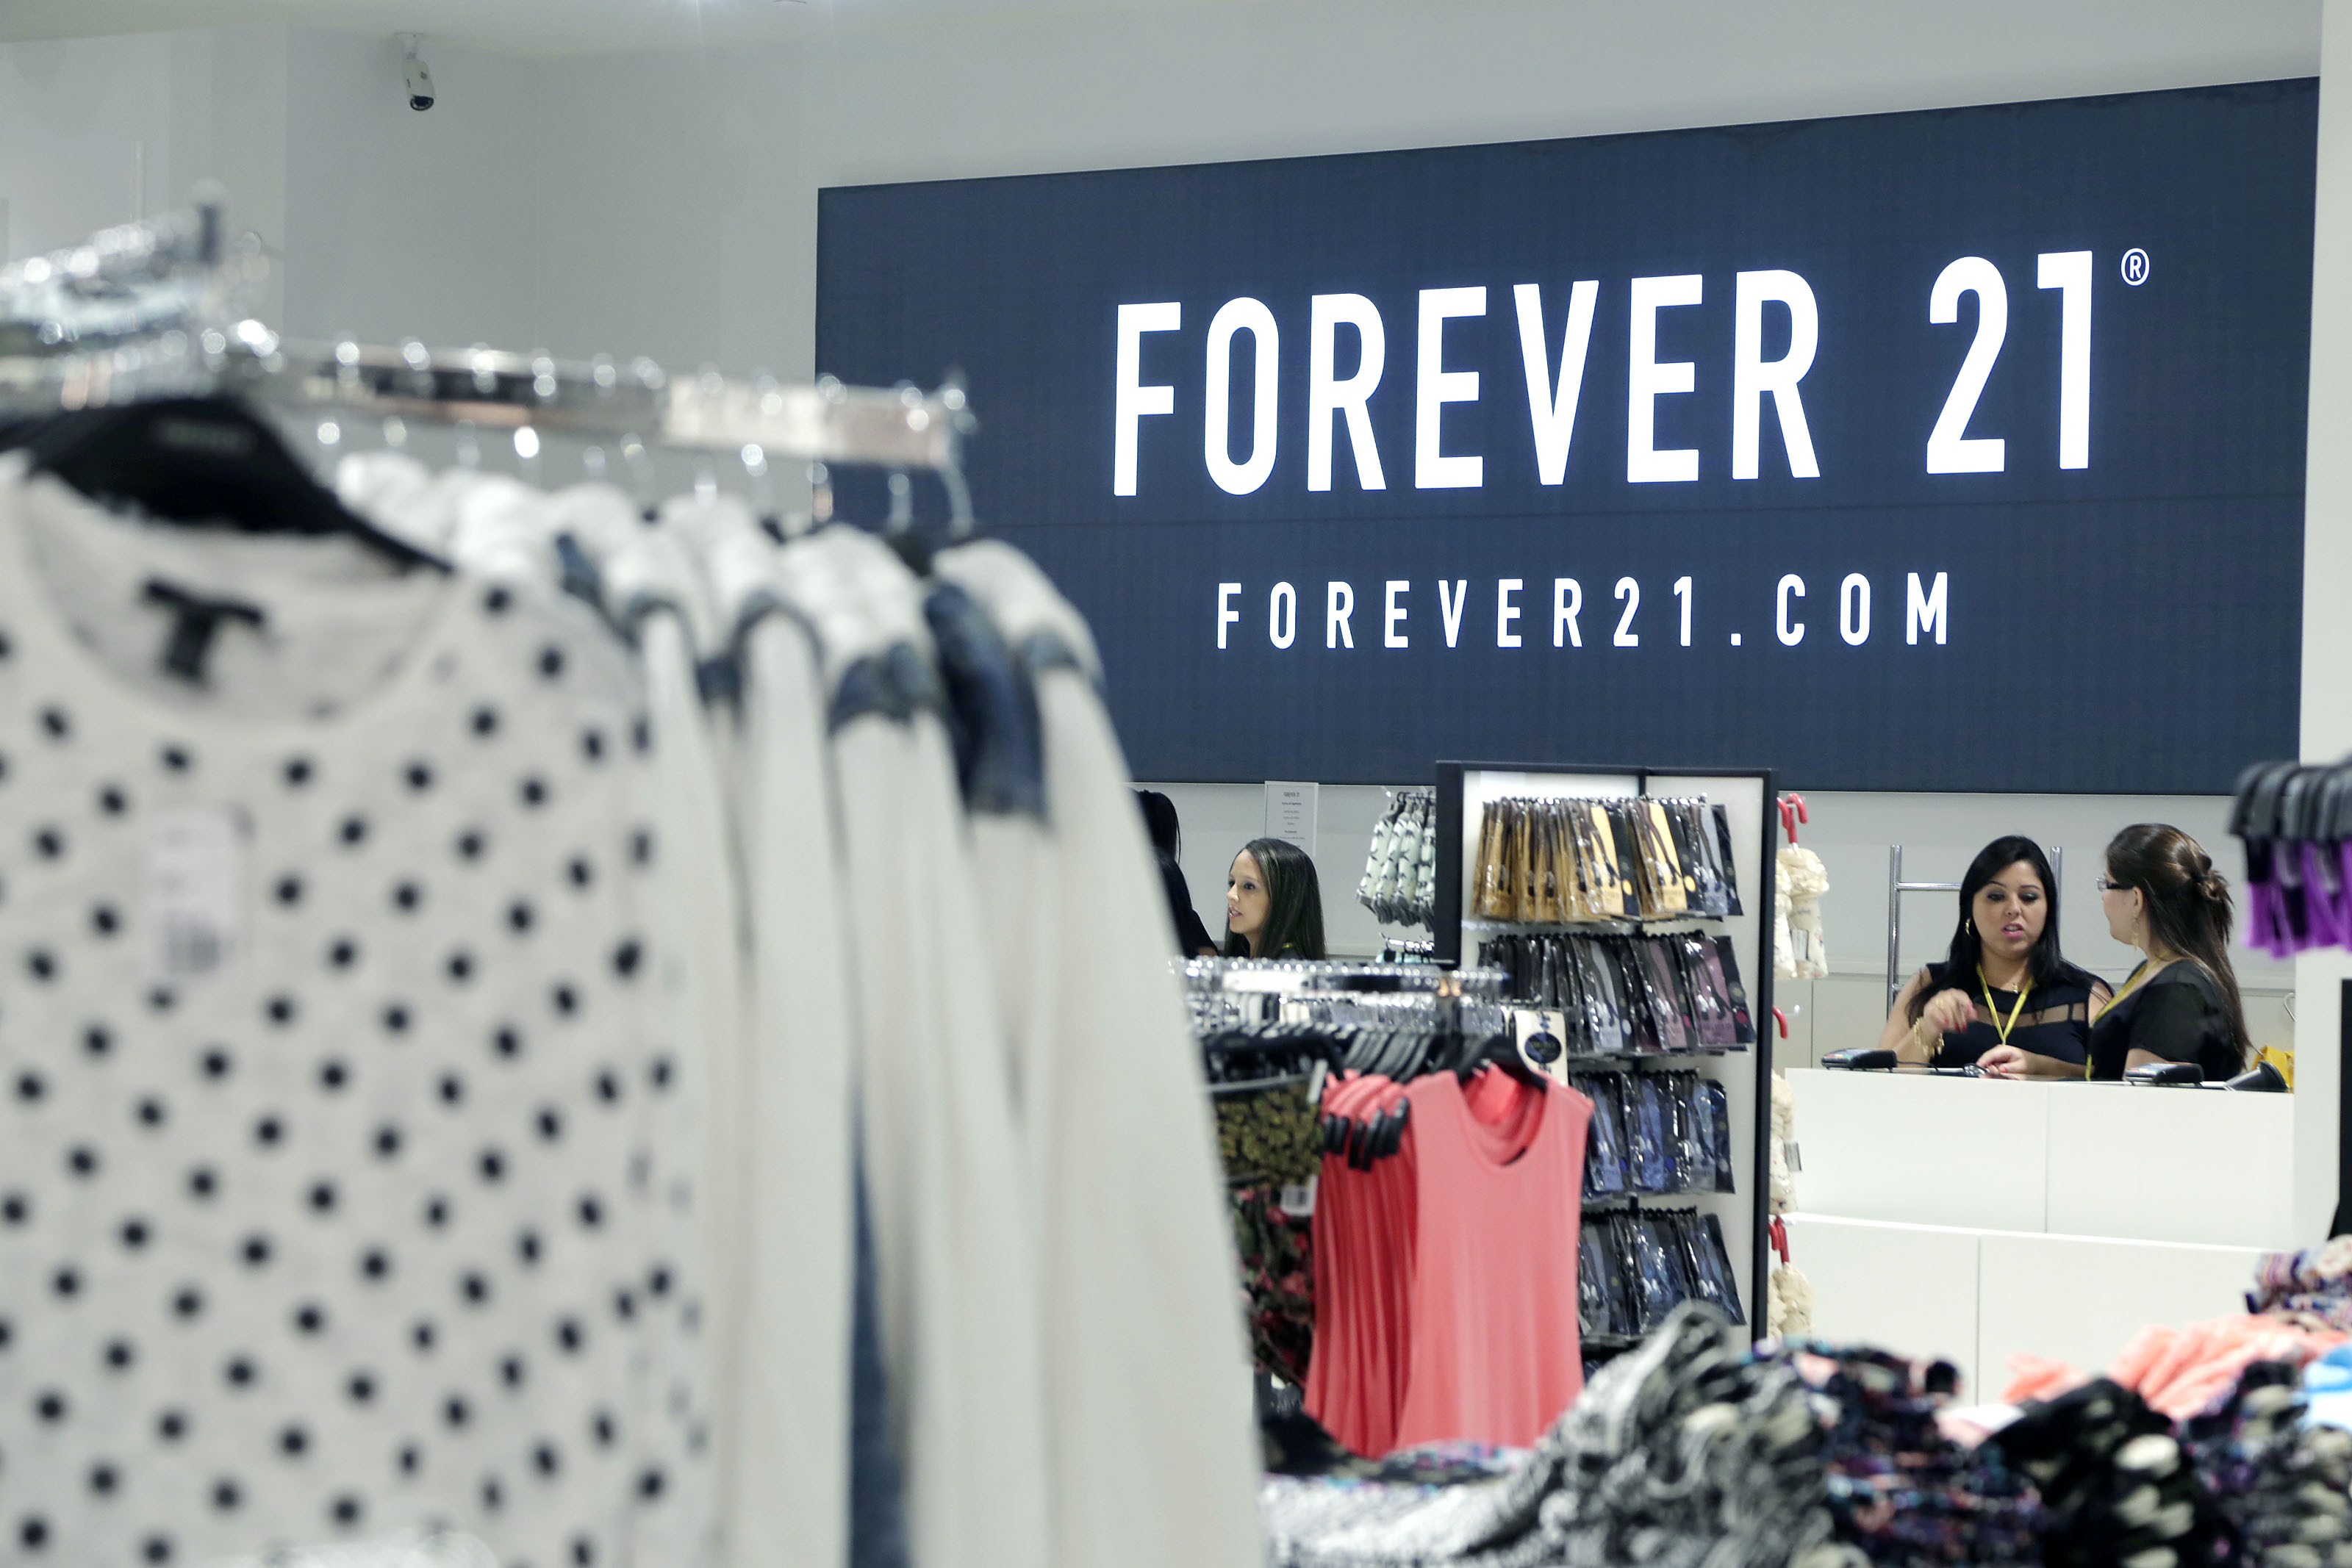 Forever 21 abre a sua primeira loja no Brasil